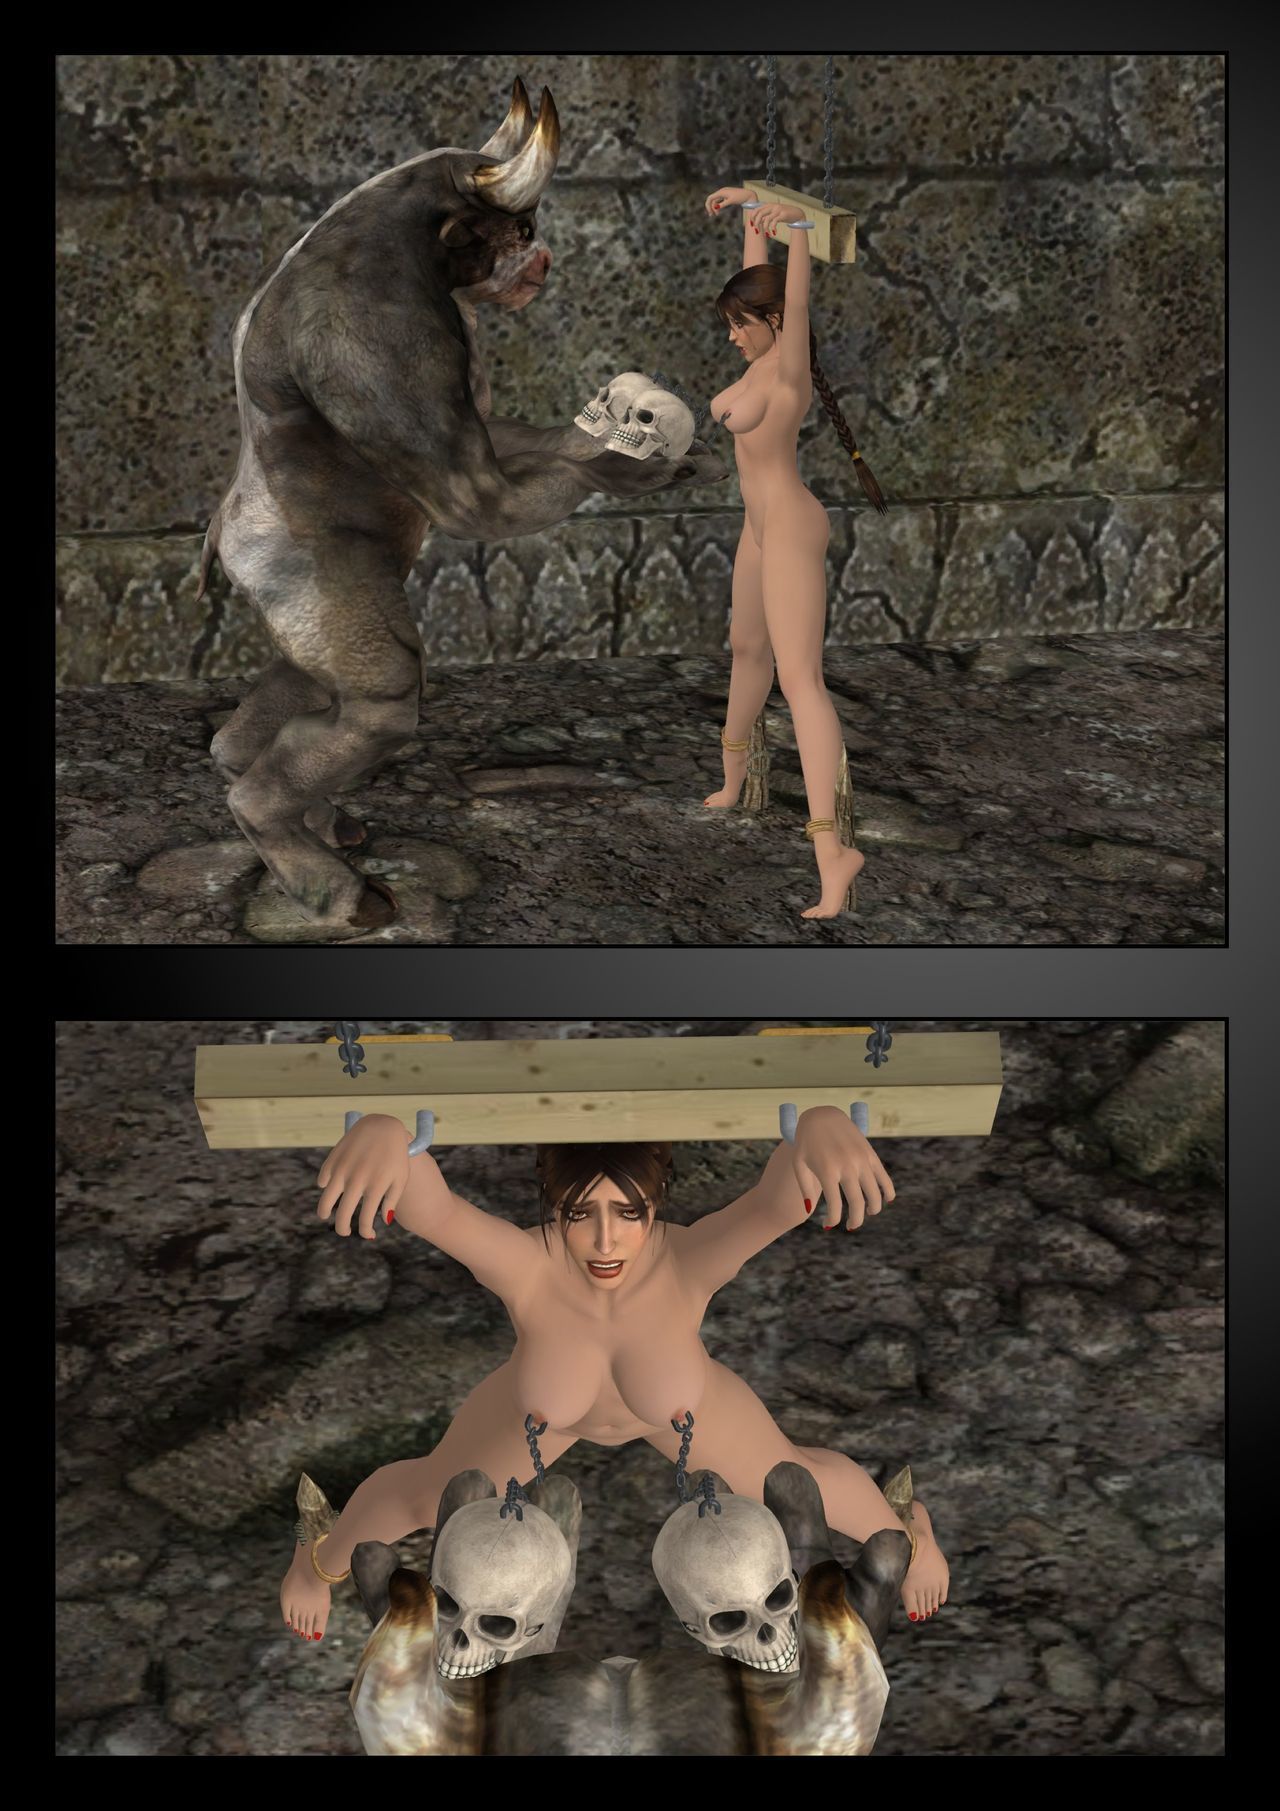 Lara Croft vs il minotauro w.i.p.